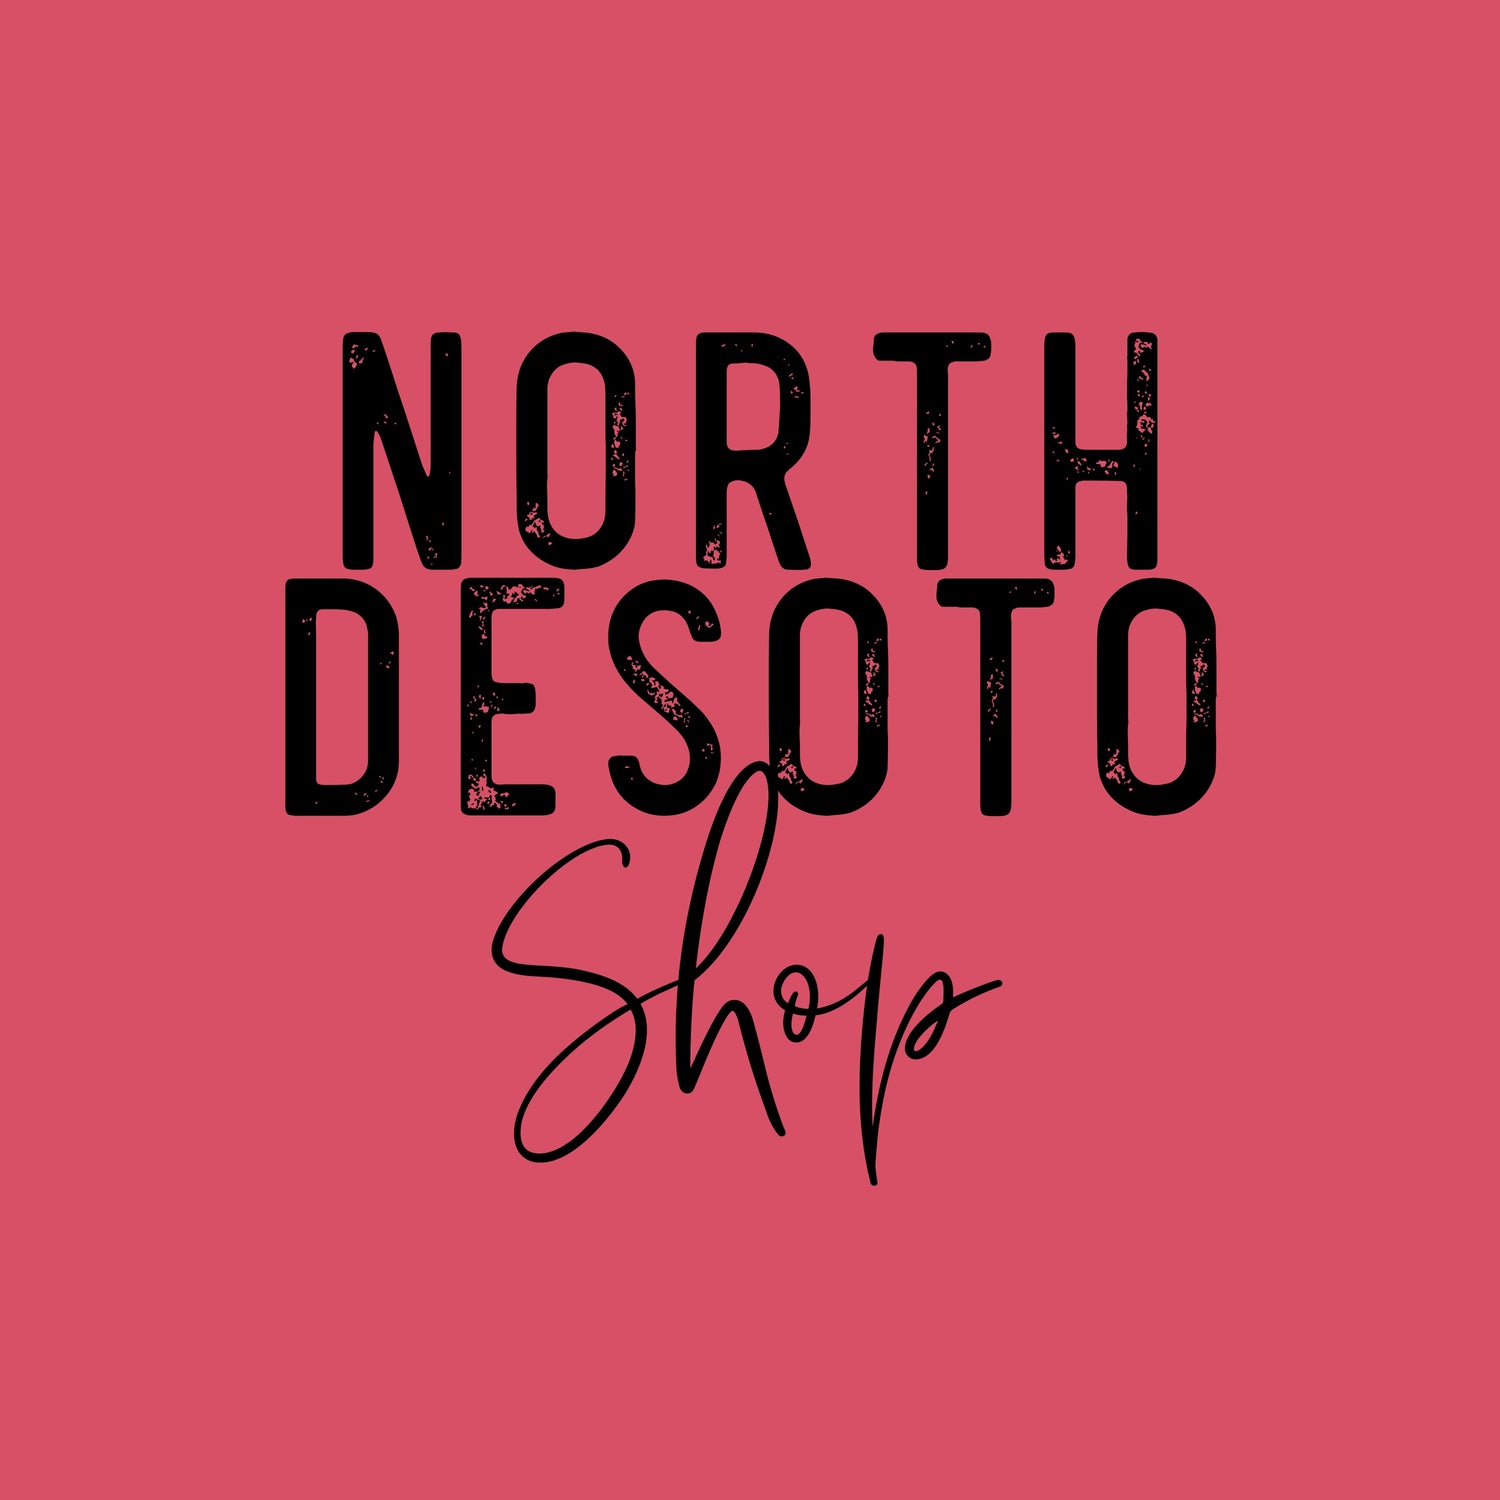 North Desoto Spirit Collection